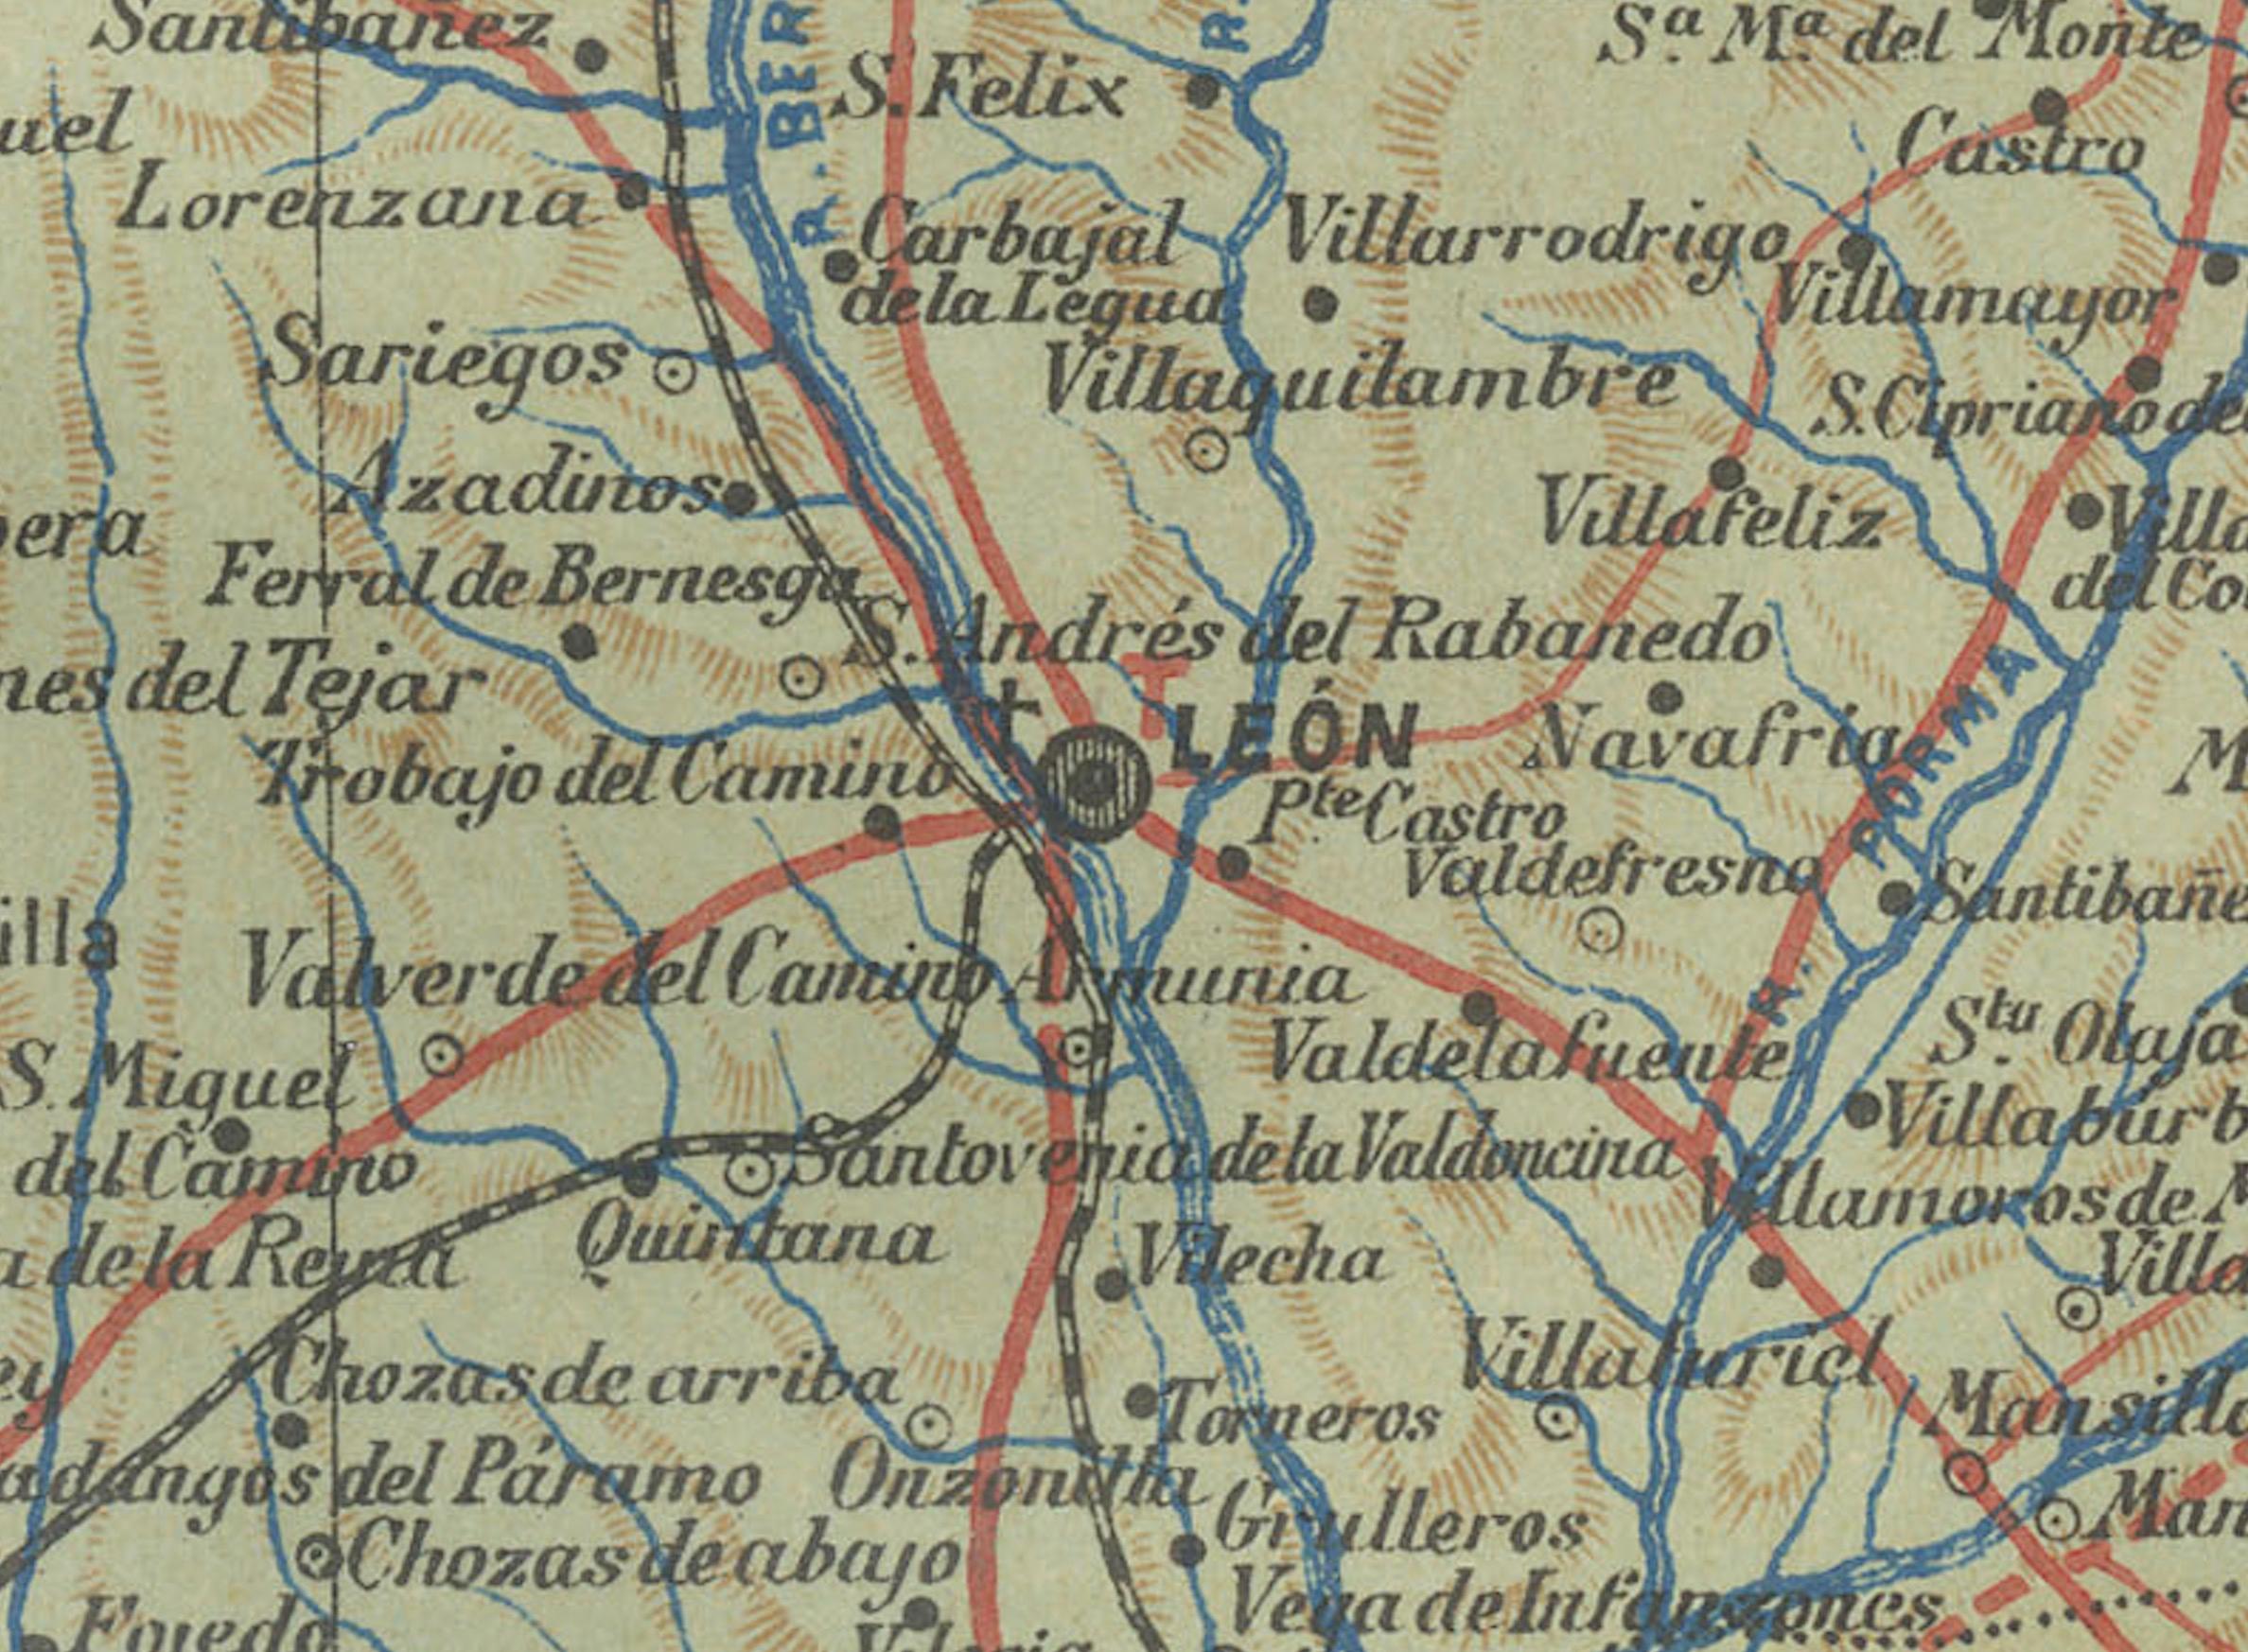 Paper León 1903: A Cartographic Detailing of Castilla y León's Mountainous Province For Sale